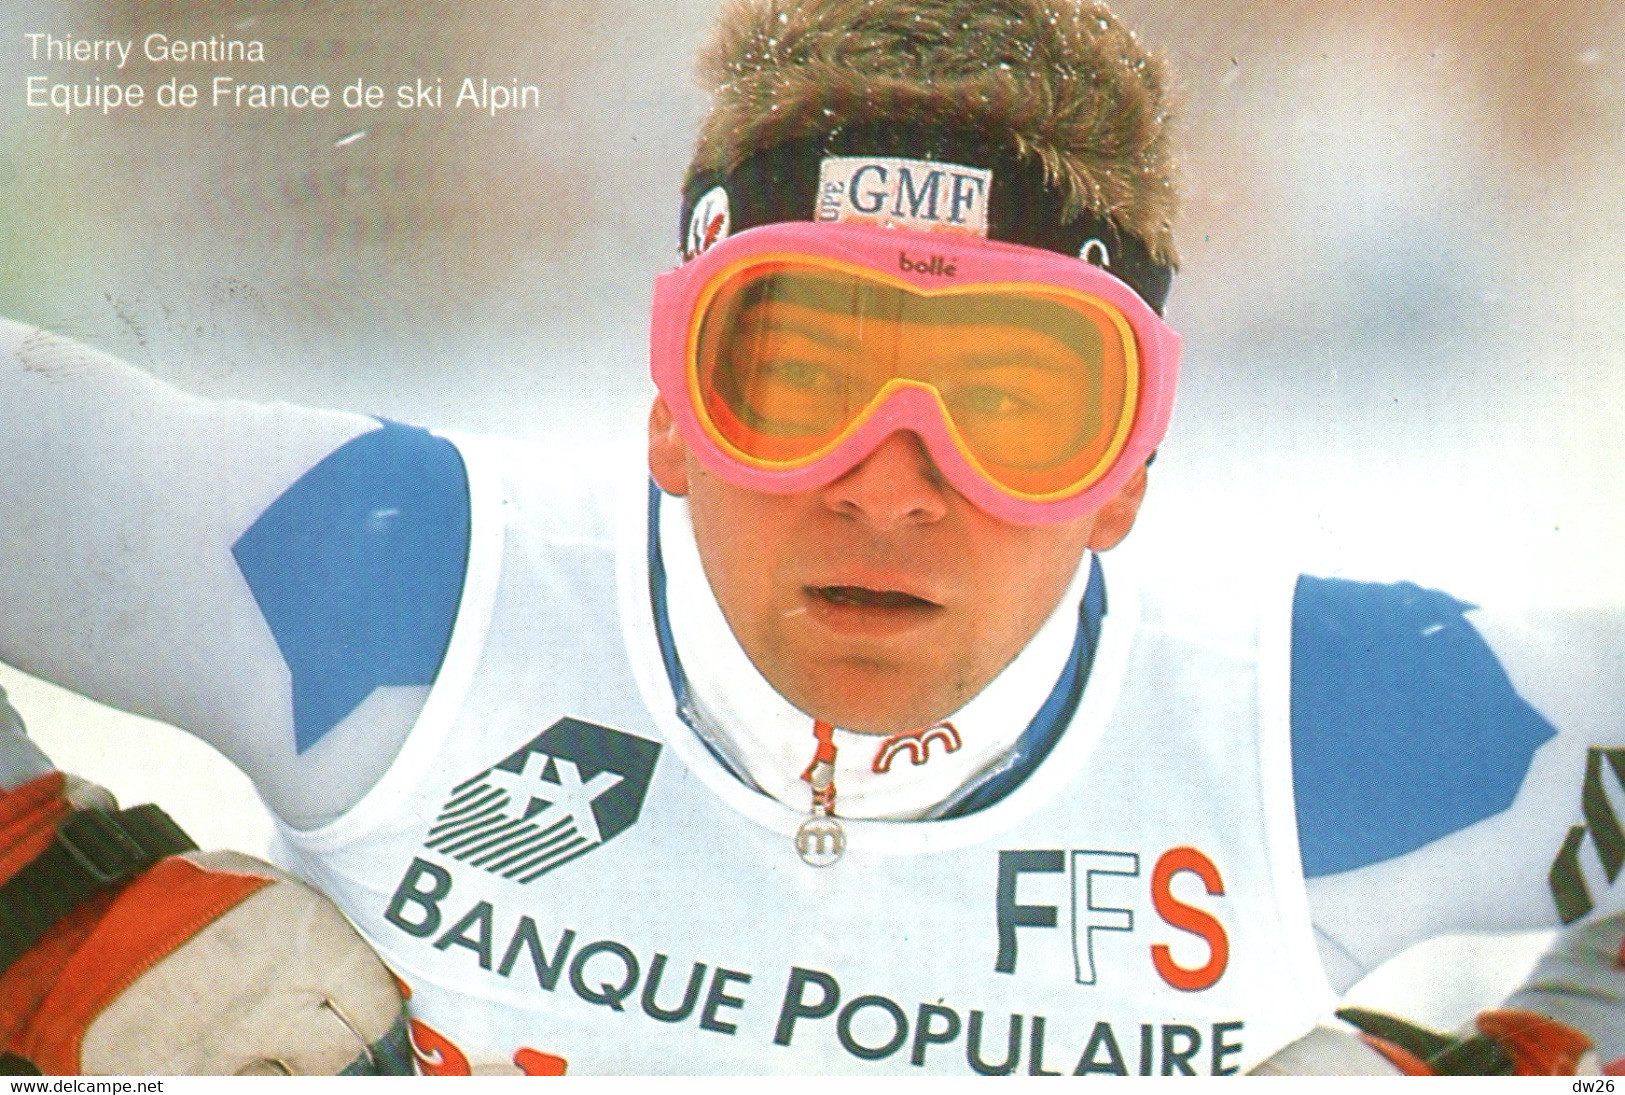 Thierry Gentina - Equipe De France De Ski Alpin (Descente) - Publicité Banque Populaire 1992 - Artes Marciales